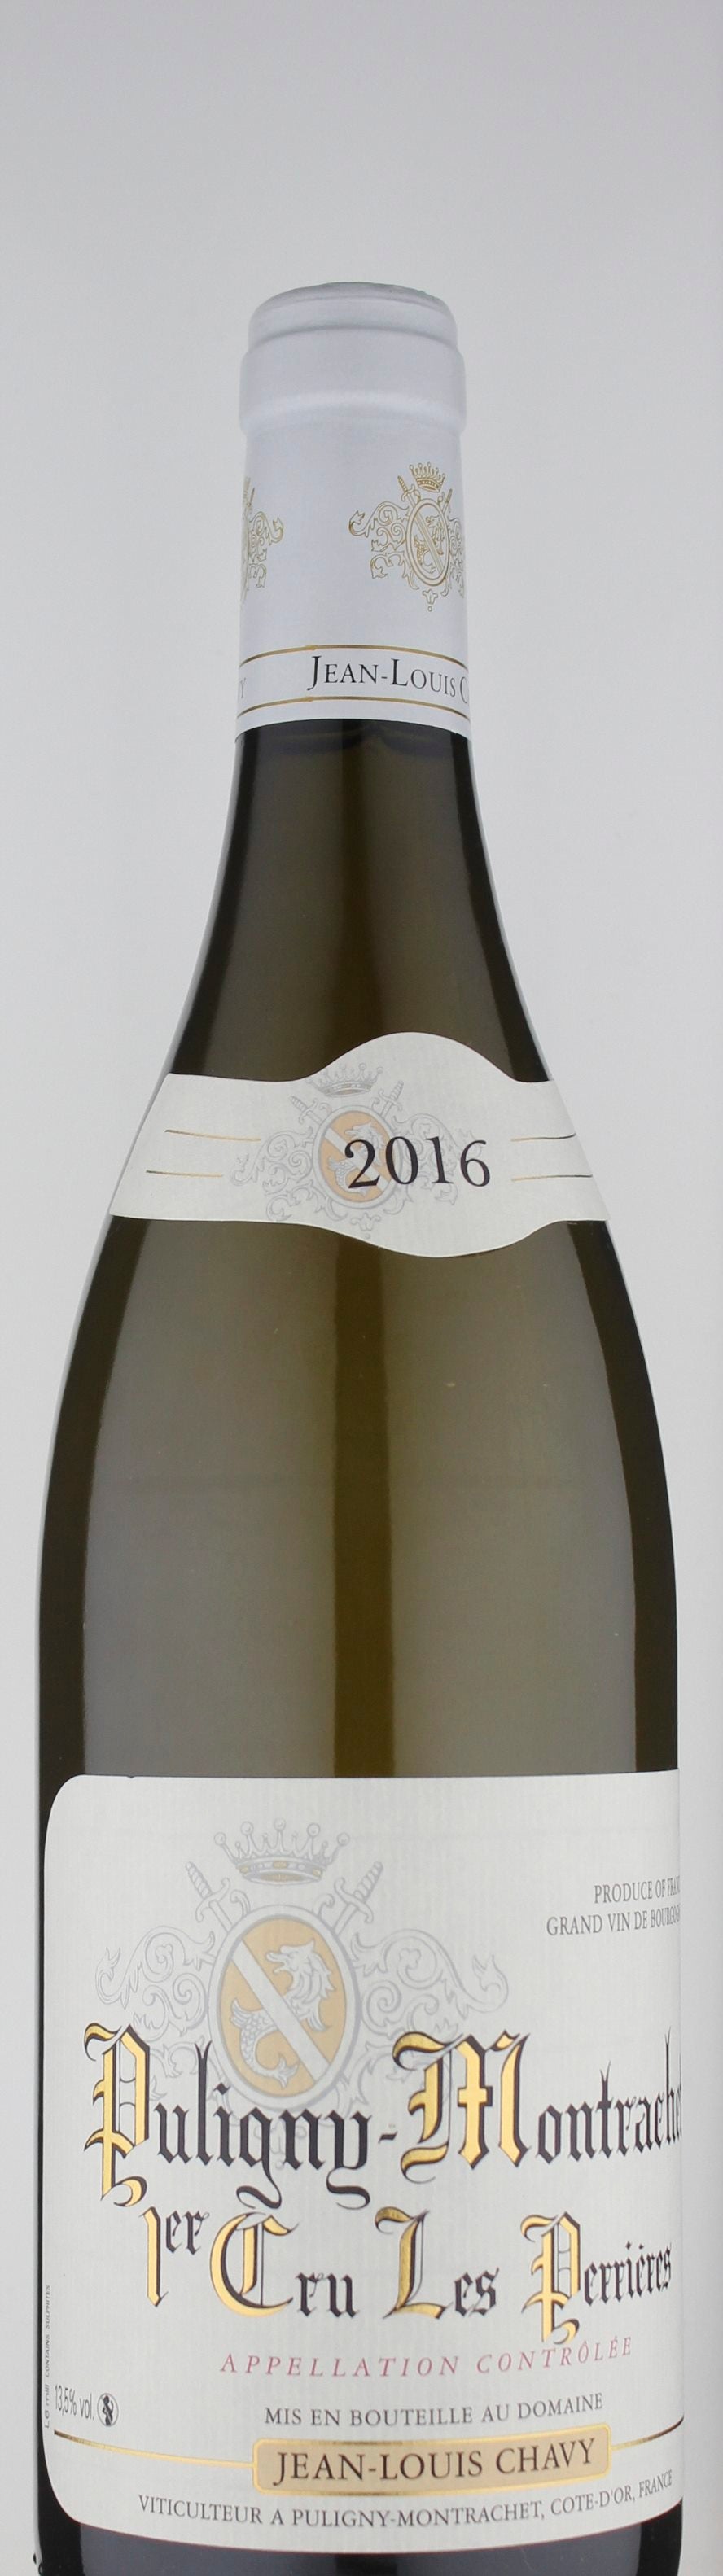 Domaine Jean-Louis Chavy Les Perrieres 1er Cru Chardonnay 2016